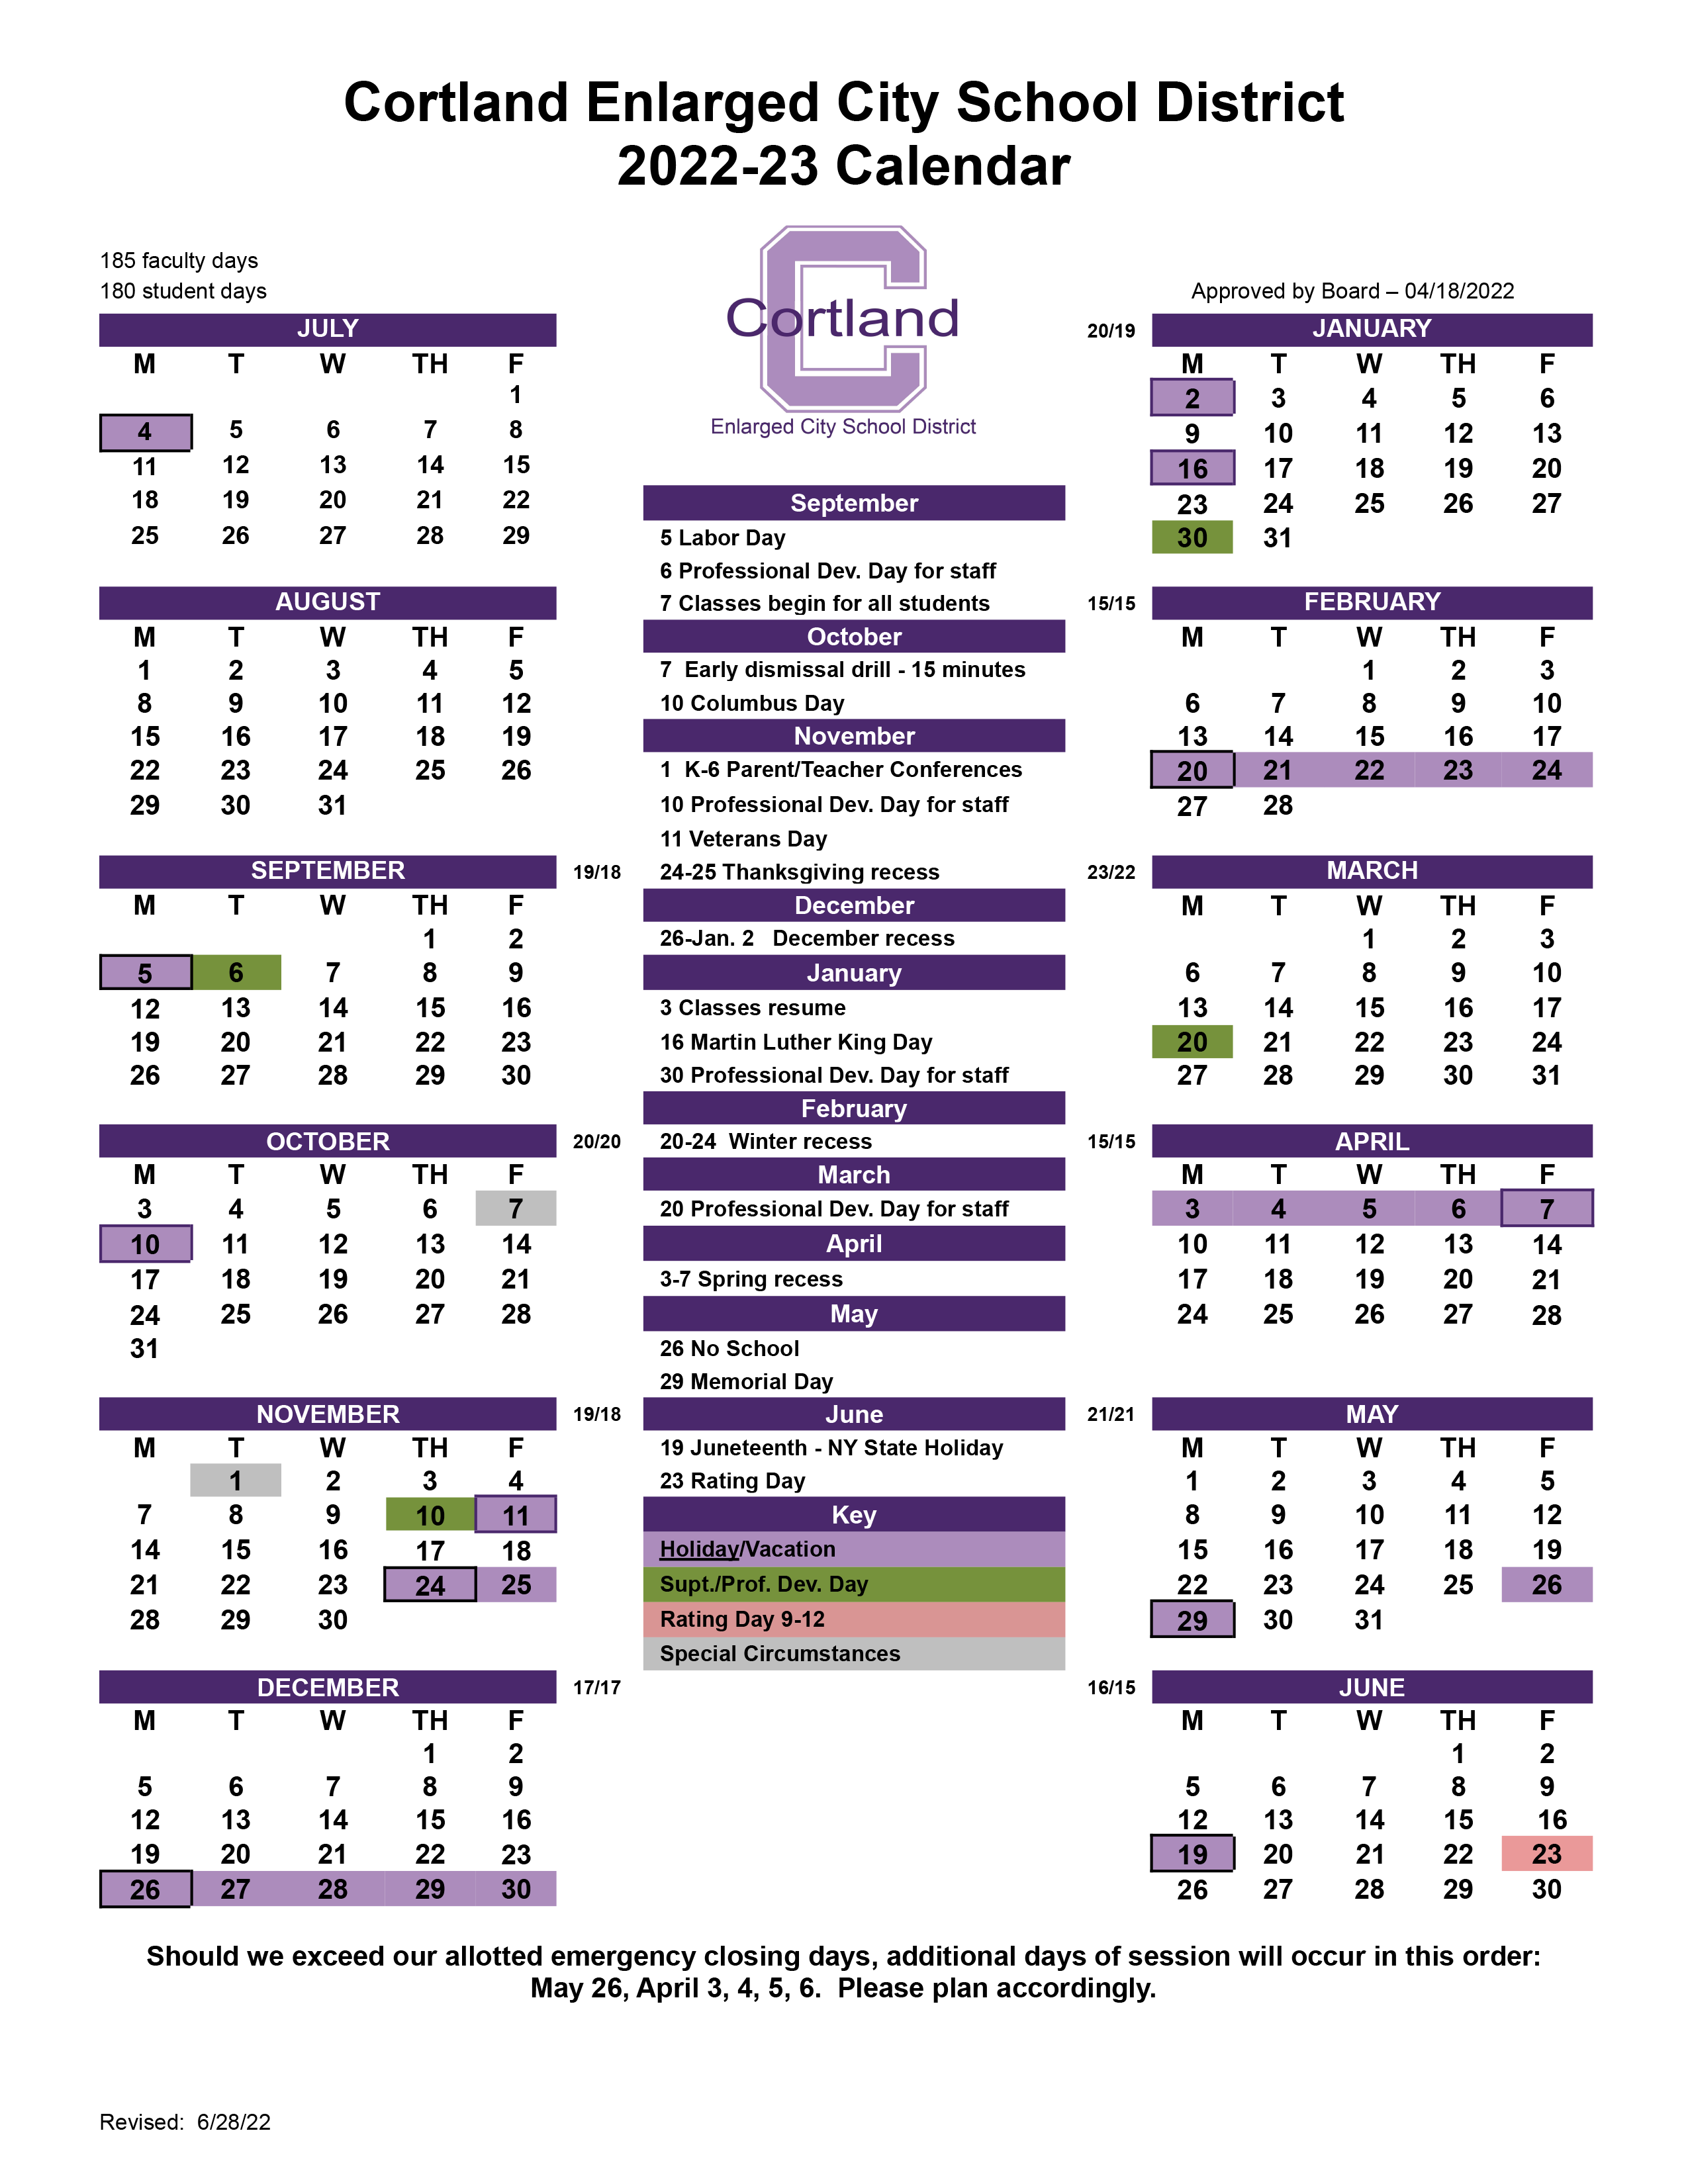 Calendars Cortland Schools